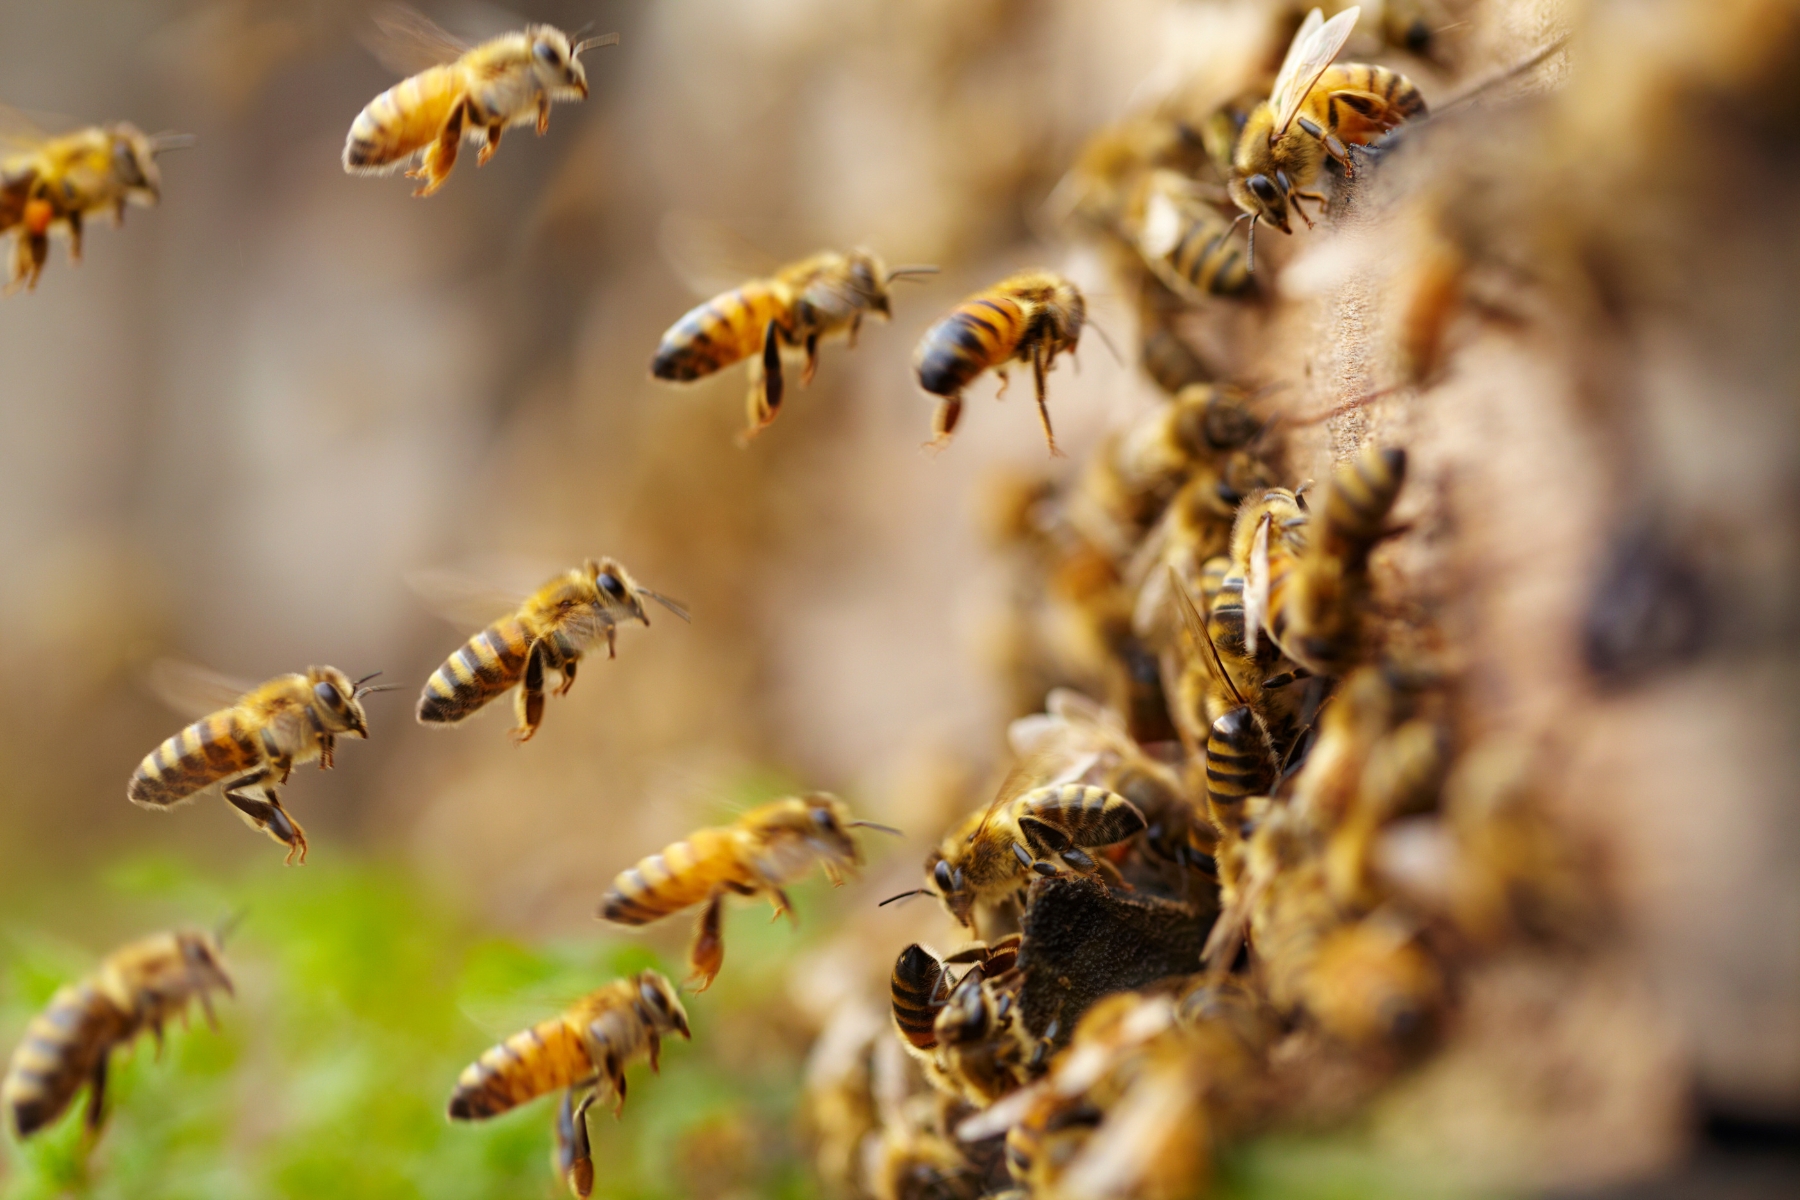 ameaças ambientais Descubra a importância das abelhas para ecossistemas, agricultura e nossa sobrevivência. Junte-se à causa de sua proteção e conservação.